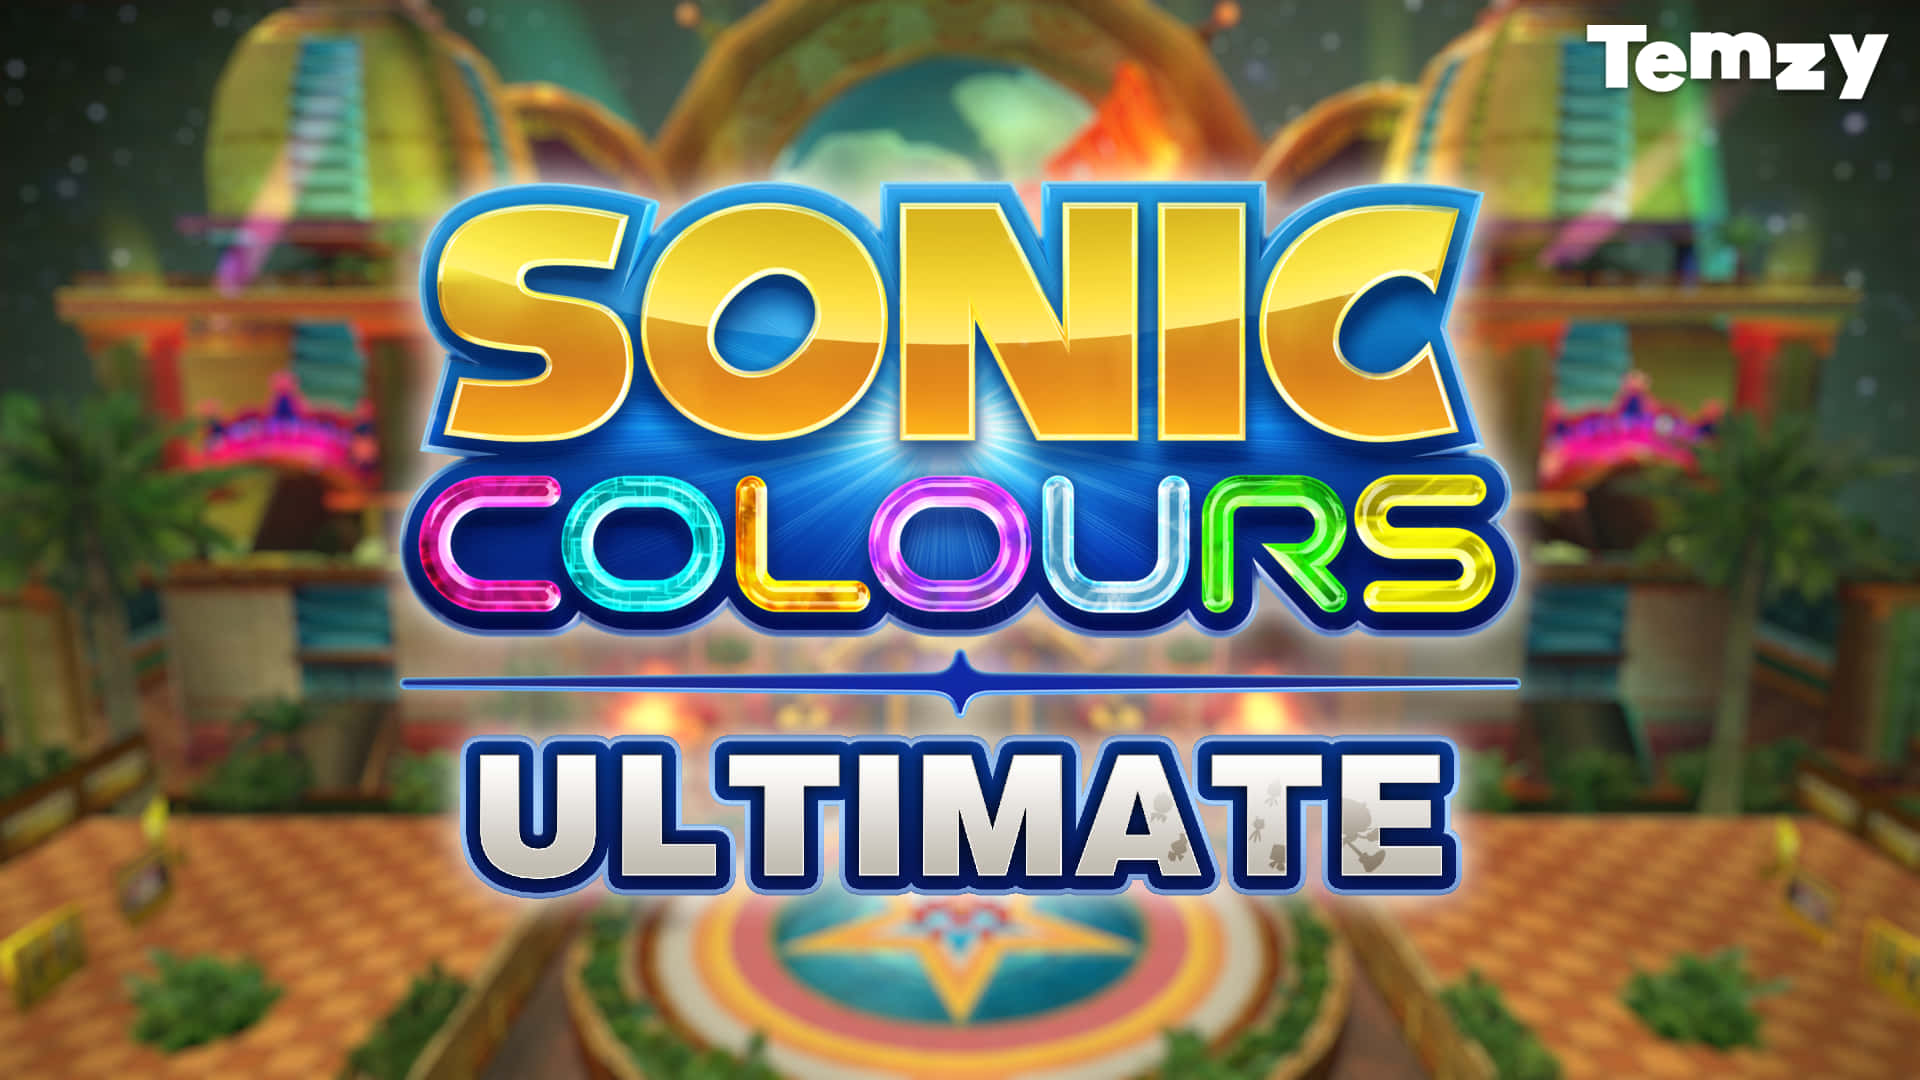 Erlebemit Sonic Colors Eine Rasante Reise Durch Eine Technicolor Wunderwelt! Wallpaper